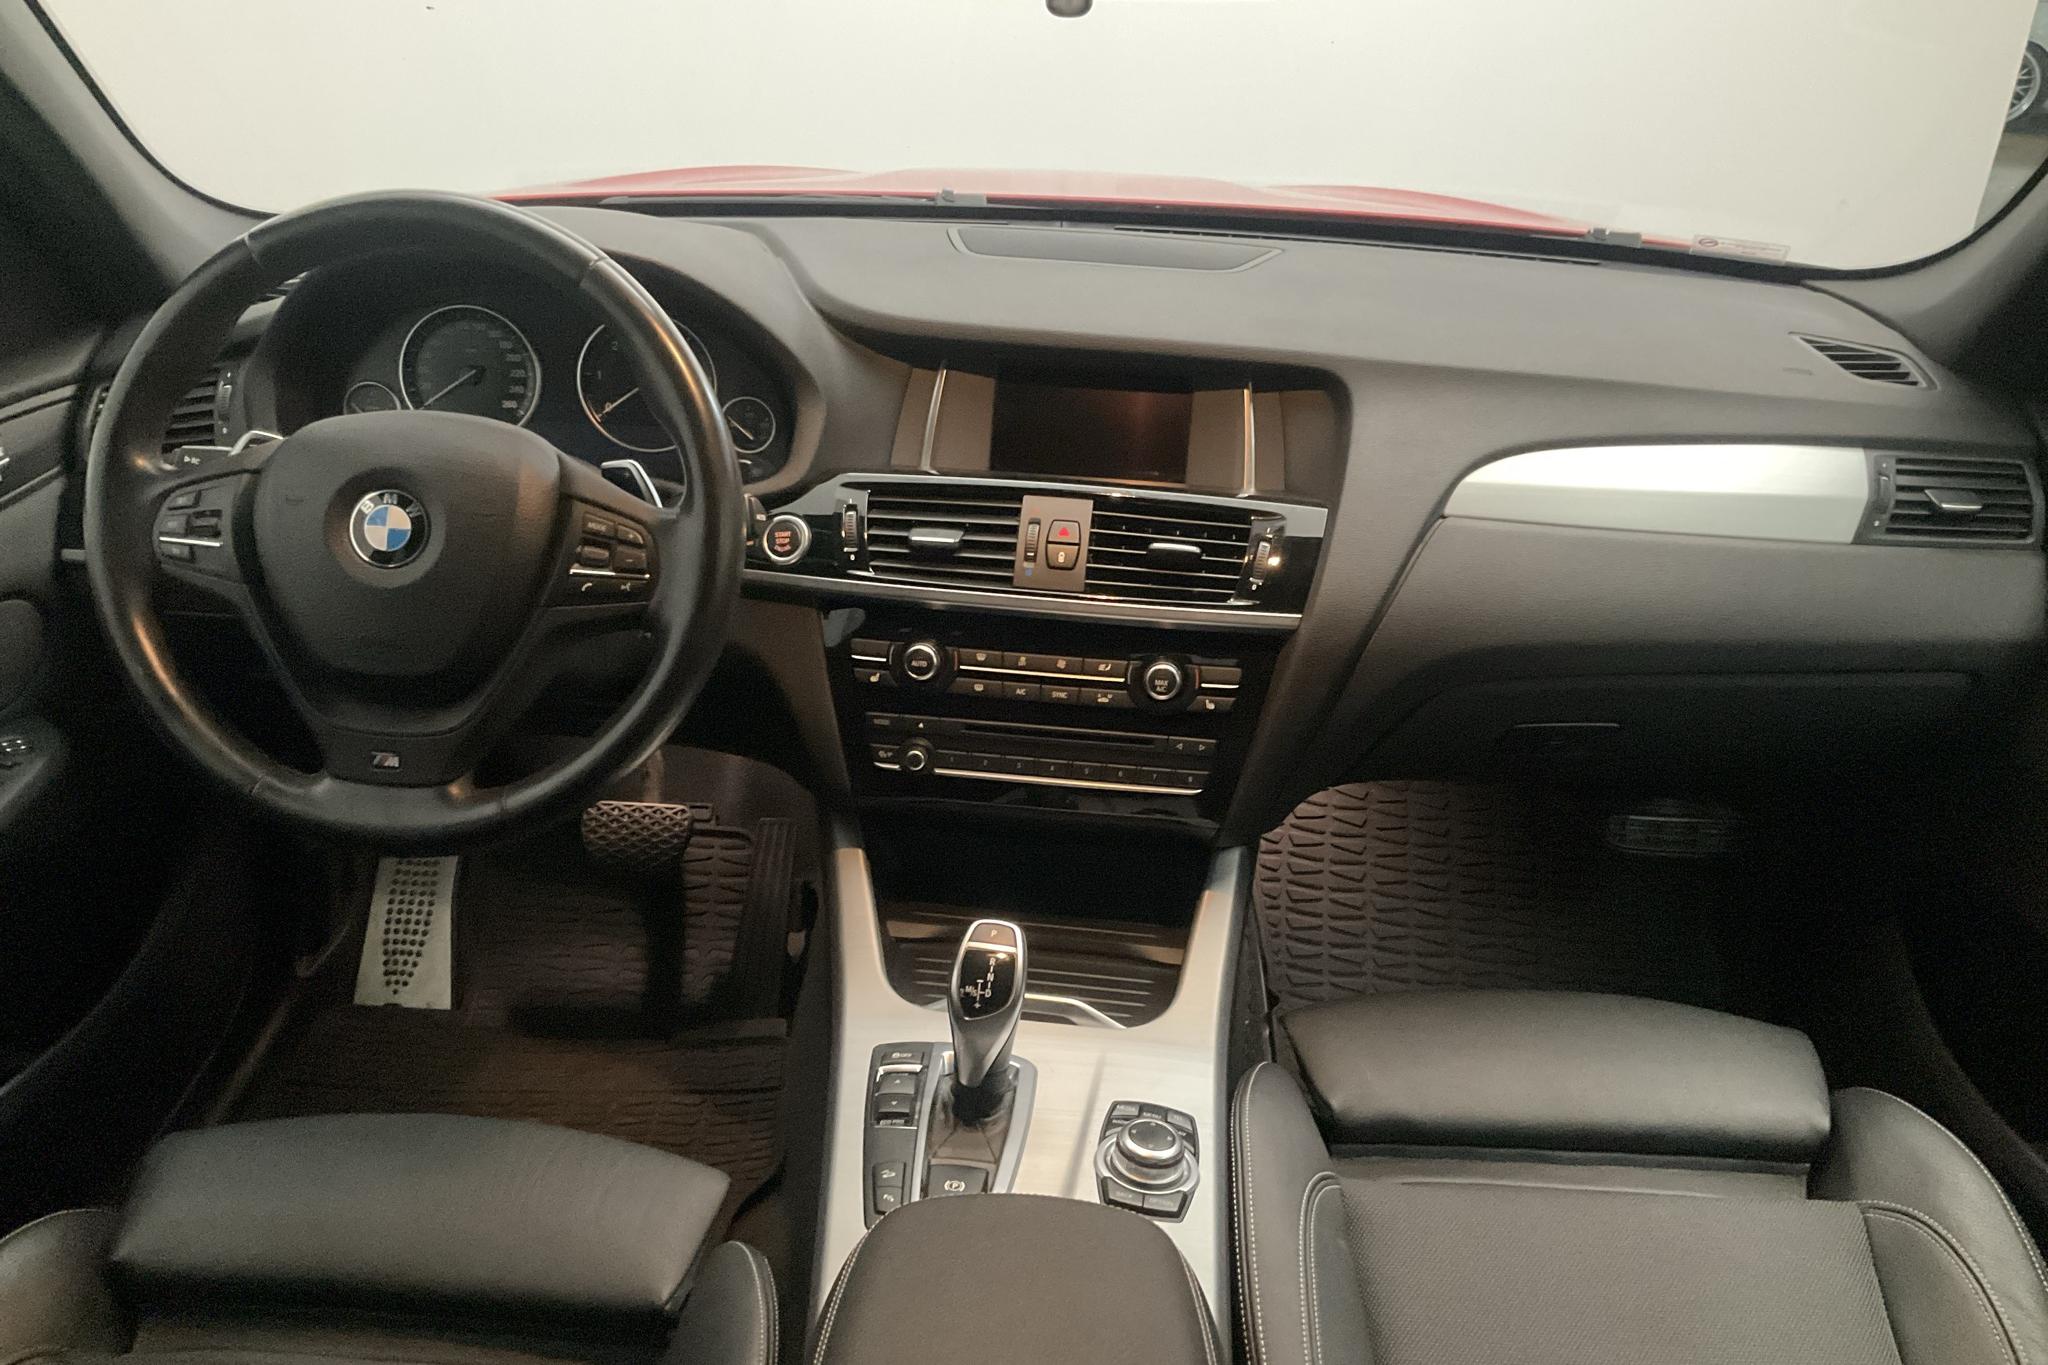 BMW X3 xDrive30d, F25 (258hk) - 101 690 km - Automatic - red - 2015